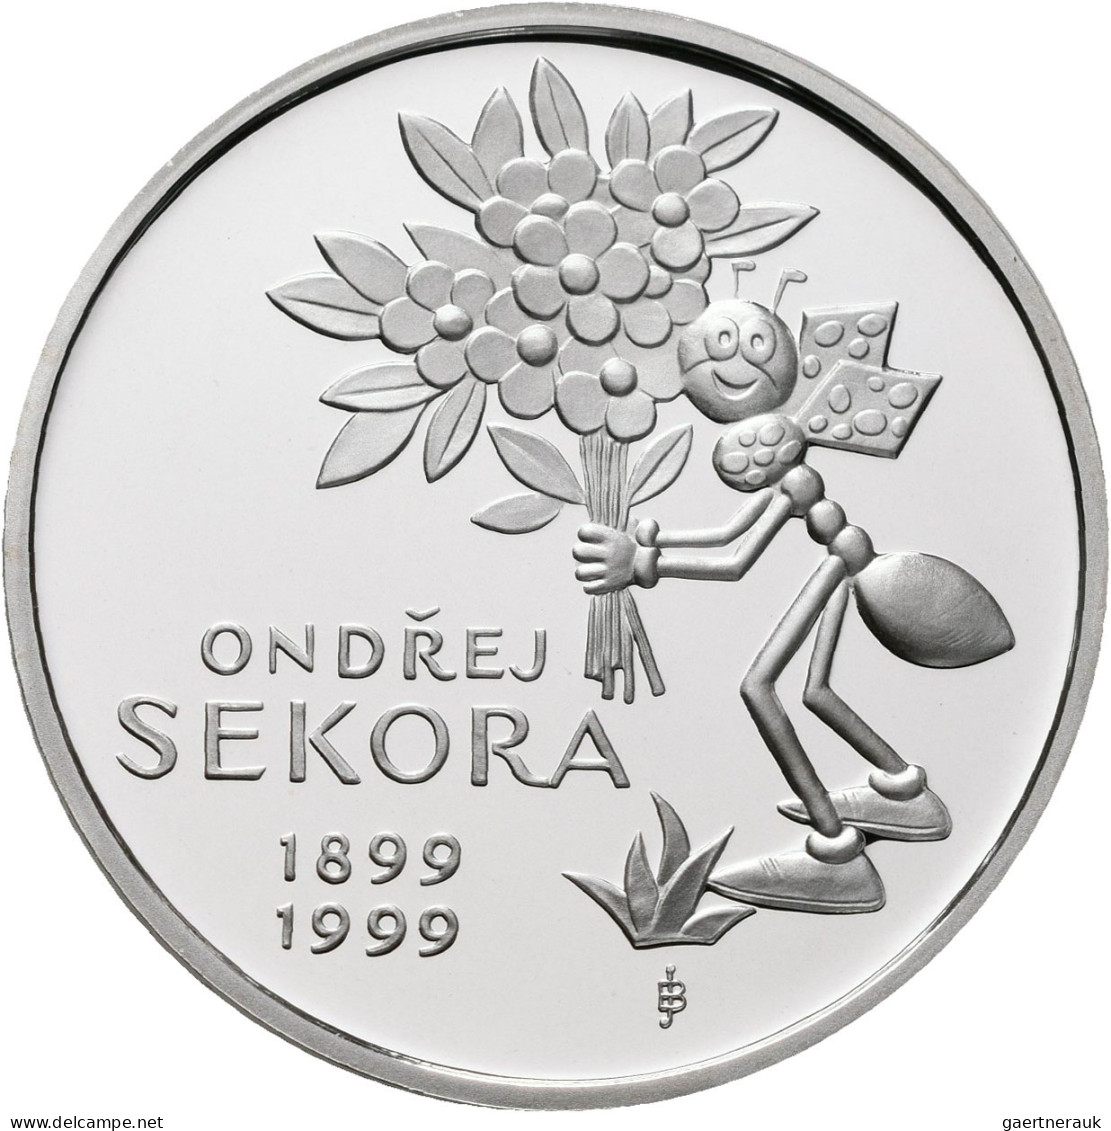 Tschechien: 200 Kc 1999 - 200 Kč 1999 100. Geburtstag Ondres Sekora / Ondřej Sek - Tsjechië